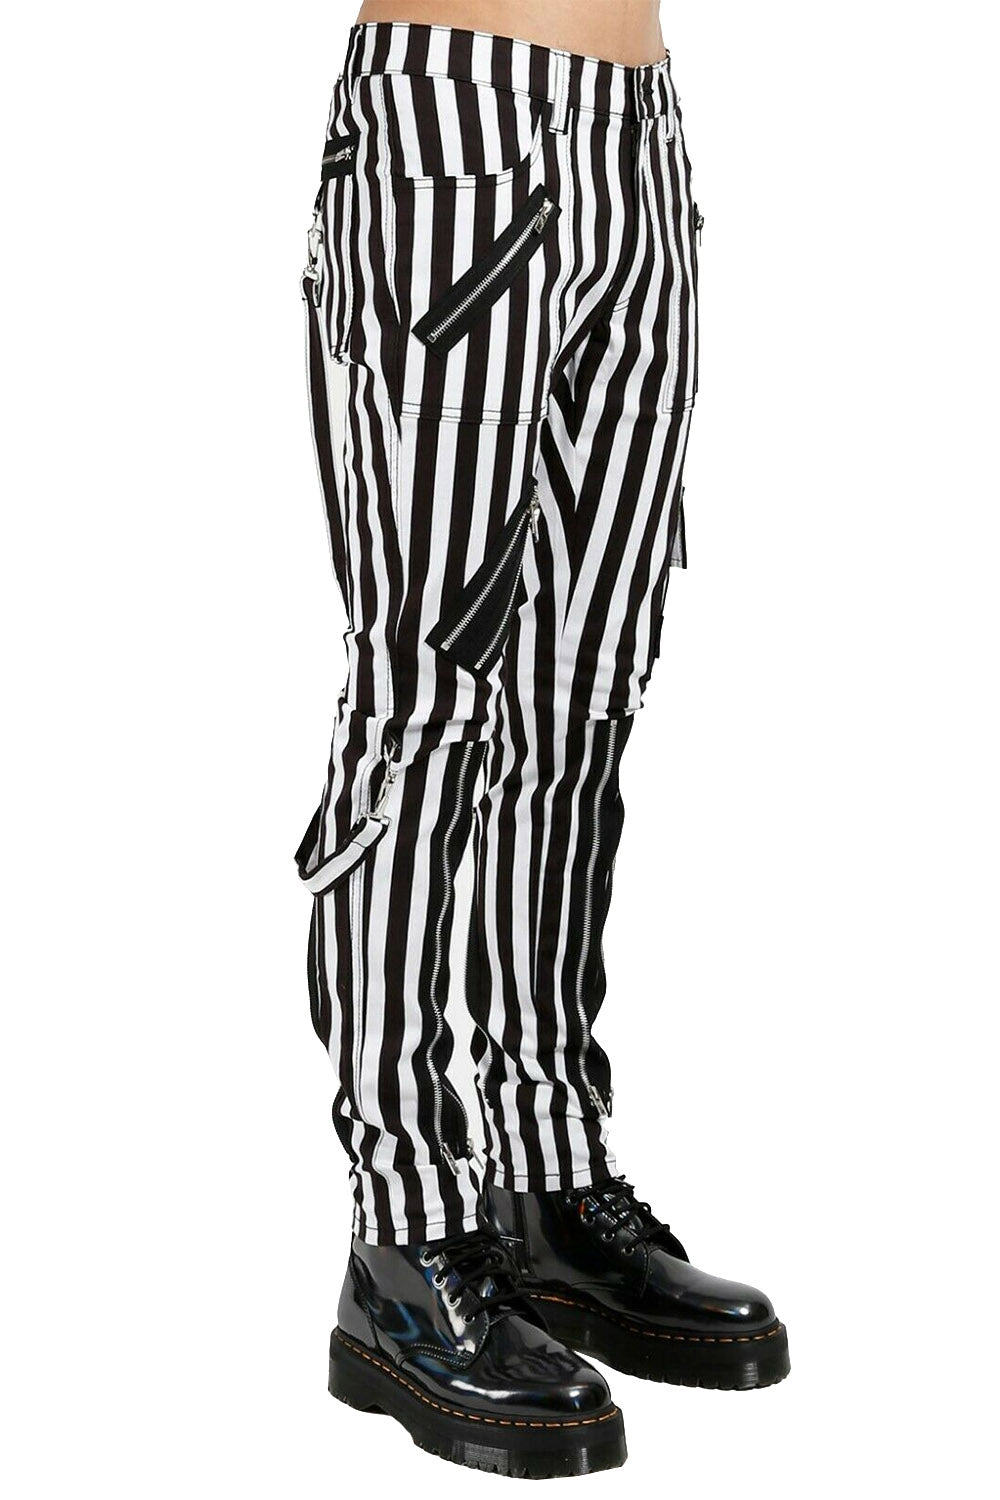 Tripp NYC Bondage Pants [Black/White Striped]